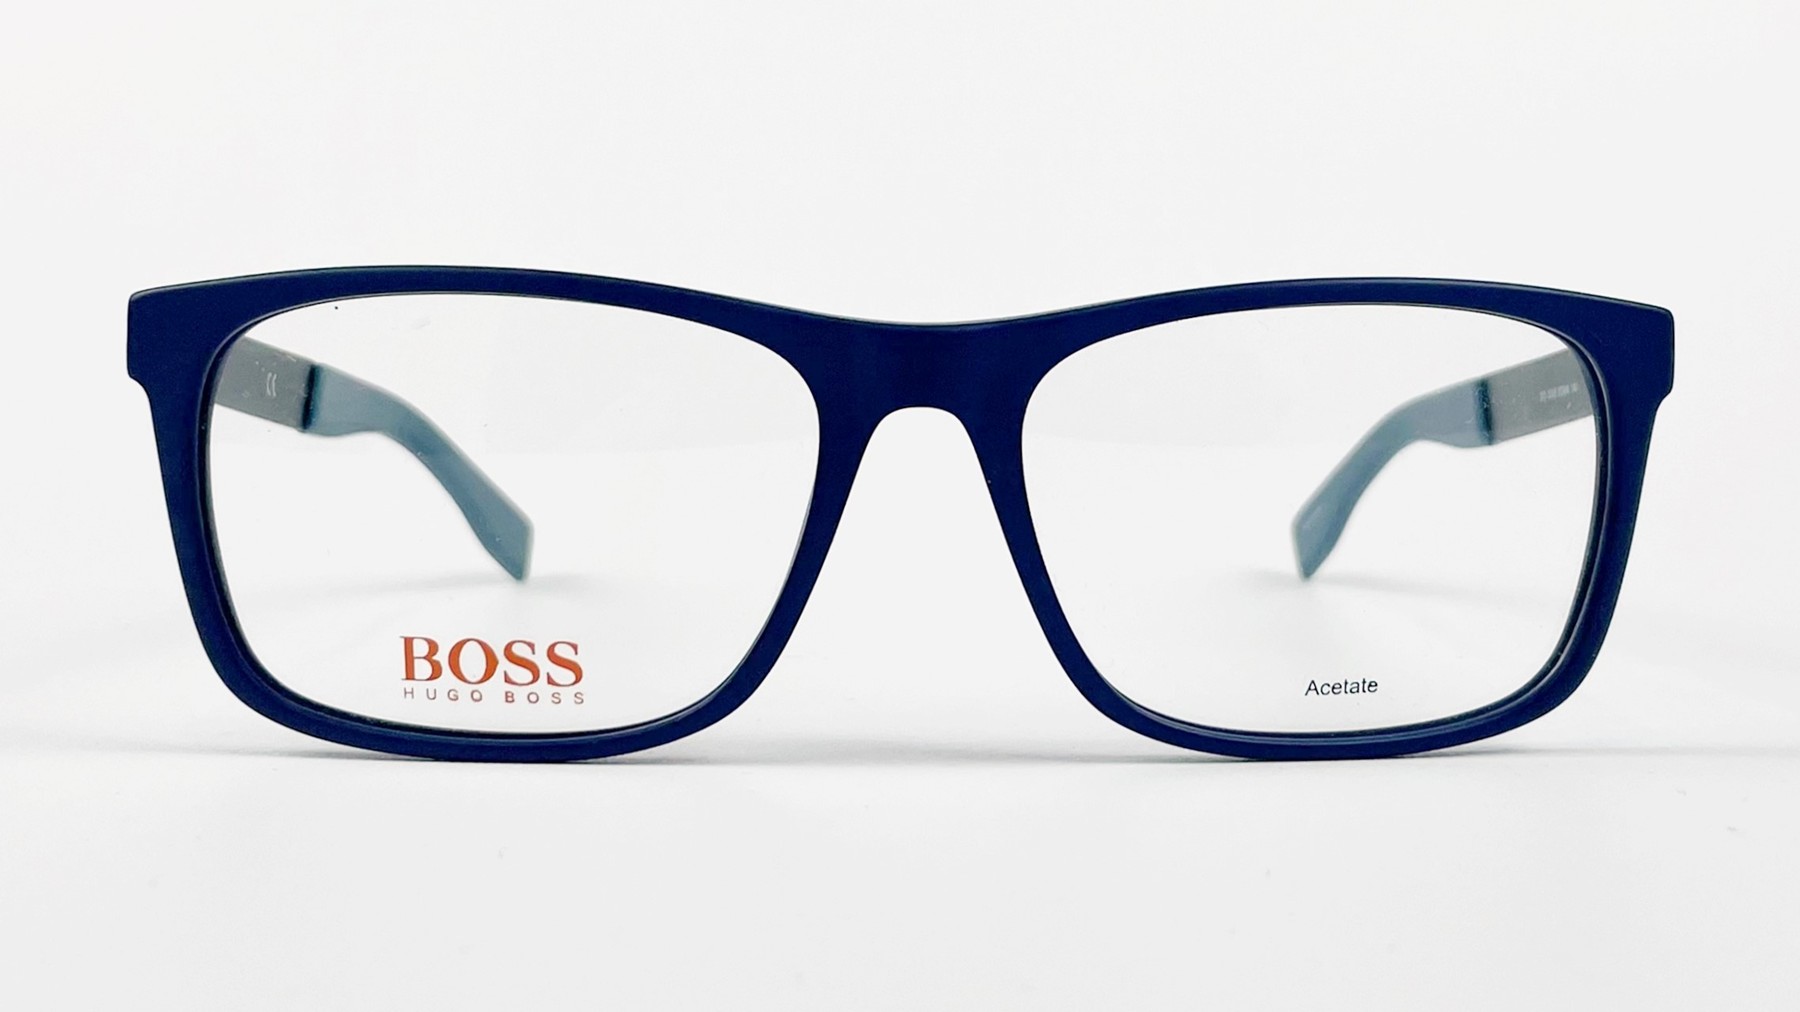 HUGO BOSS BO 0248 0QWK, Korean glasses, sunglasses, eyeglasses, glasses